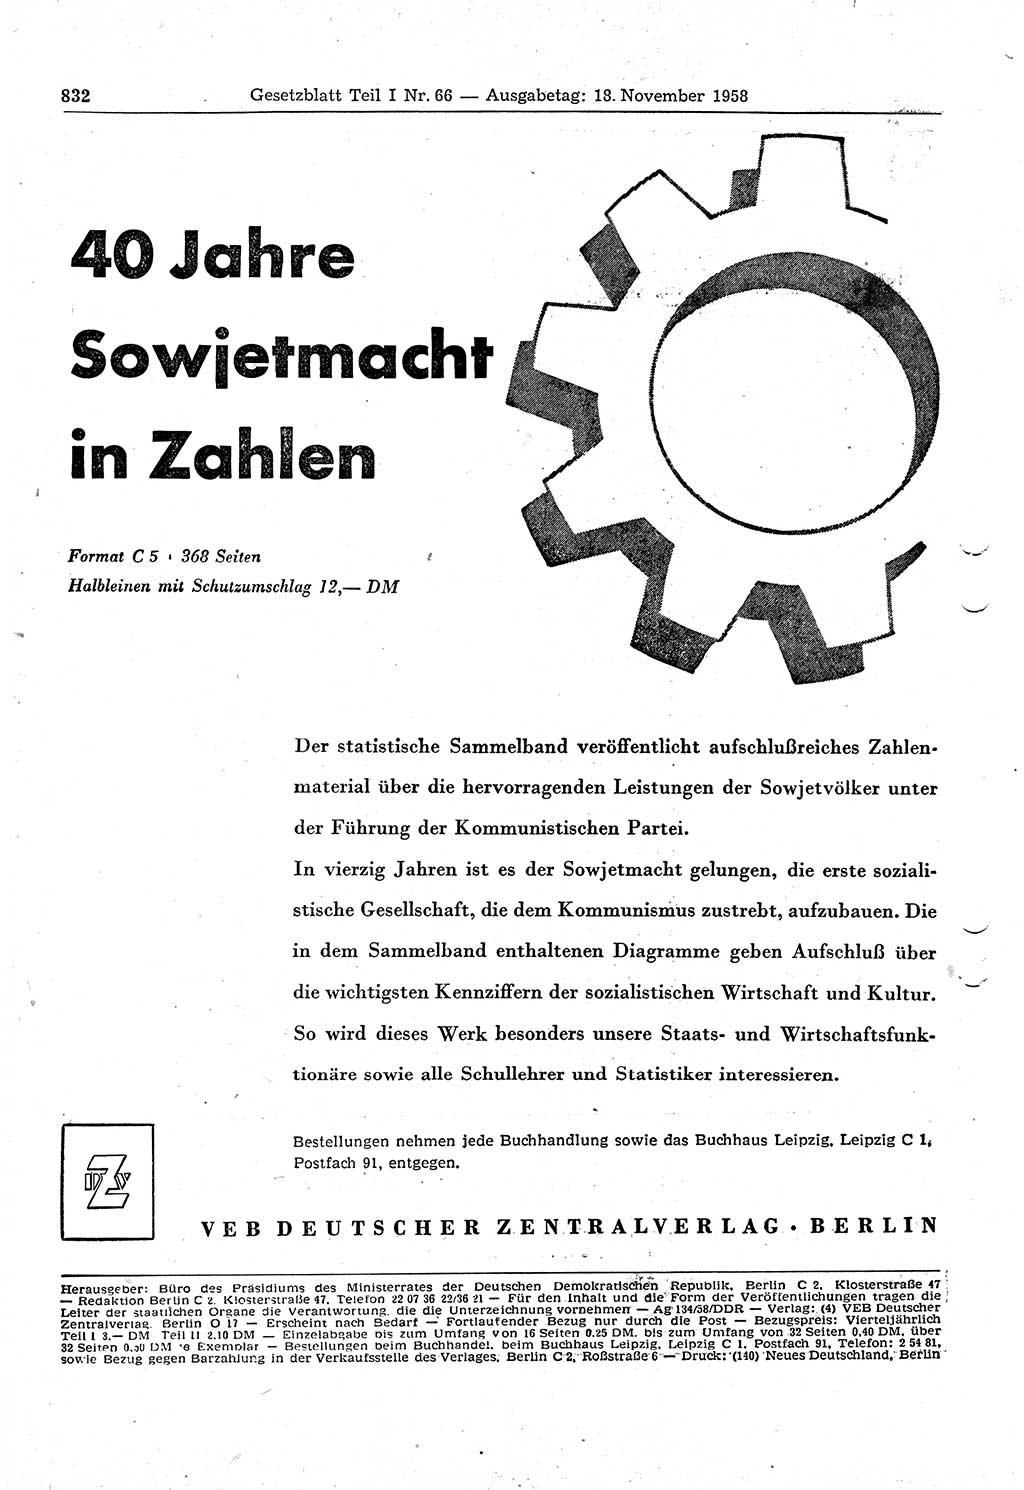 Gesetzblatt (GBl.) der Deutschen Demokratischen Republik (DDR) Teil Ⅰ 1958, Seite 832 (GBl. DDR Ⅰ 1958, S. 832)